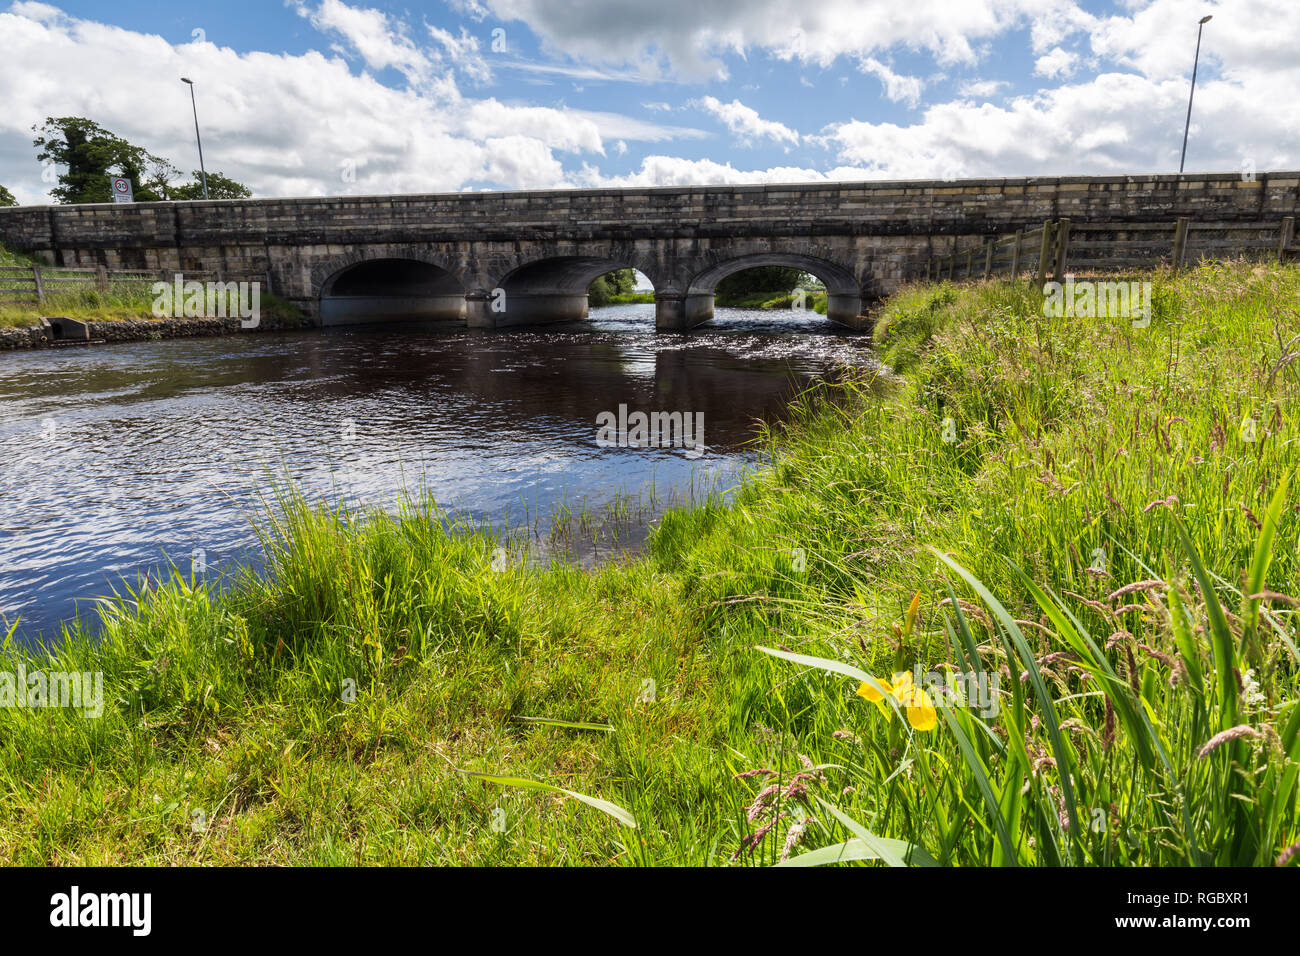 Le passage aux frontières, Belcoo-Blacklion, Irlande. Un magnifique pont sur la rivière Belcoo Belcoo liens dans le comté de Fermanagh, en Irlande du Nord à Blacklion je Banque D'Images